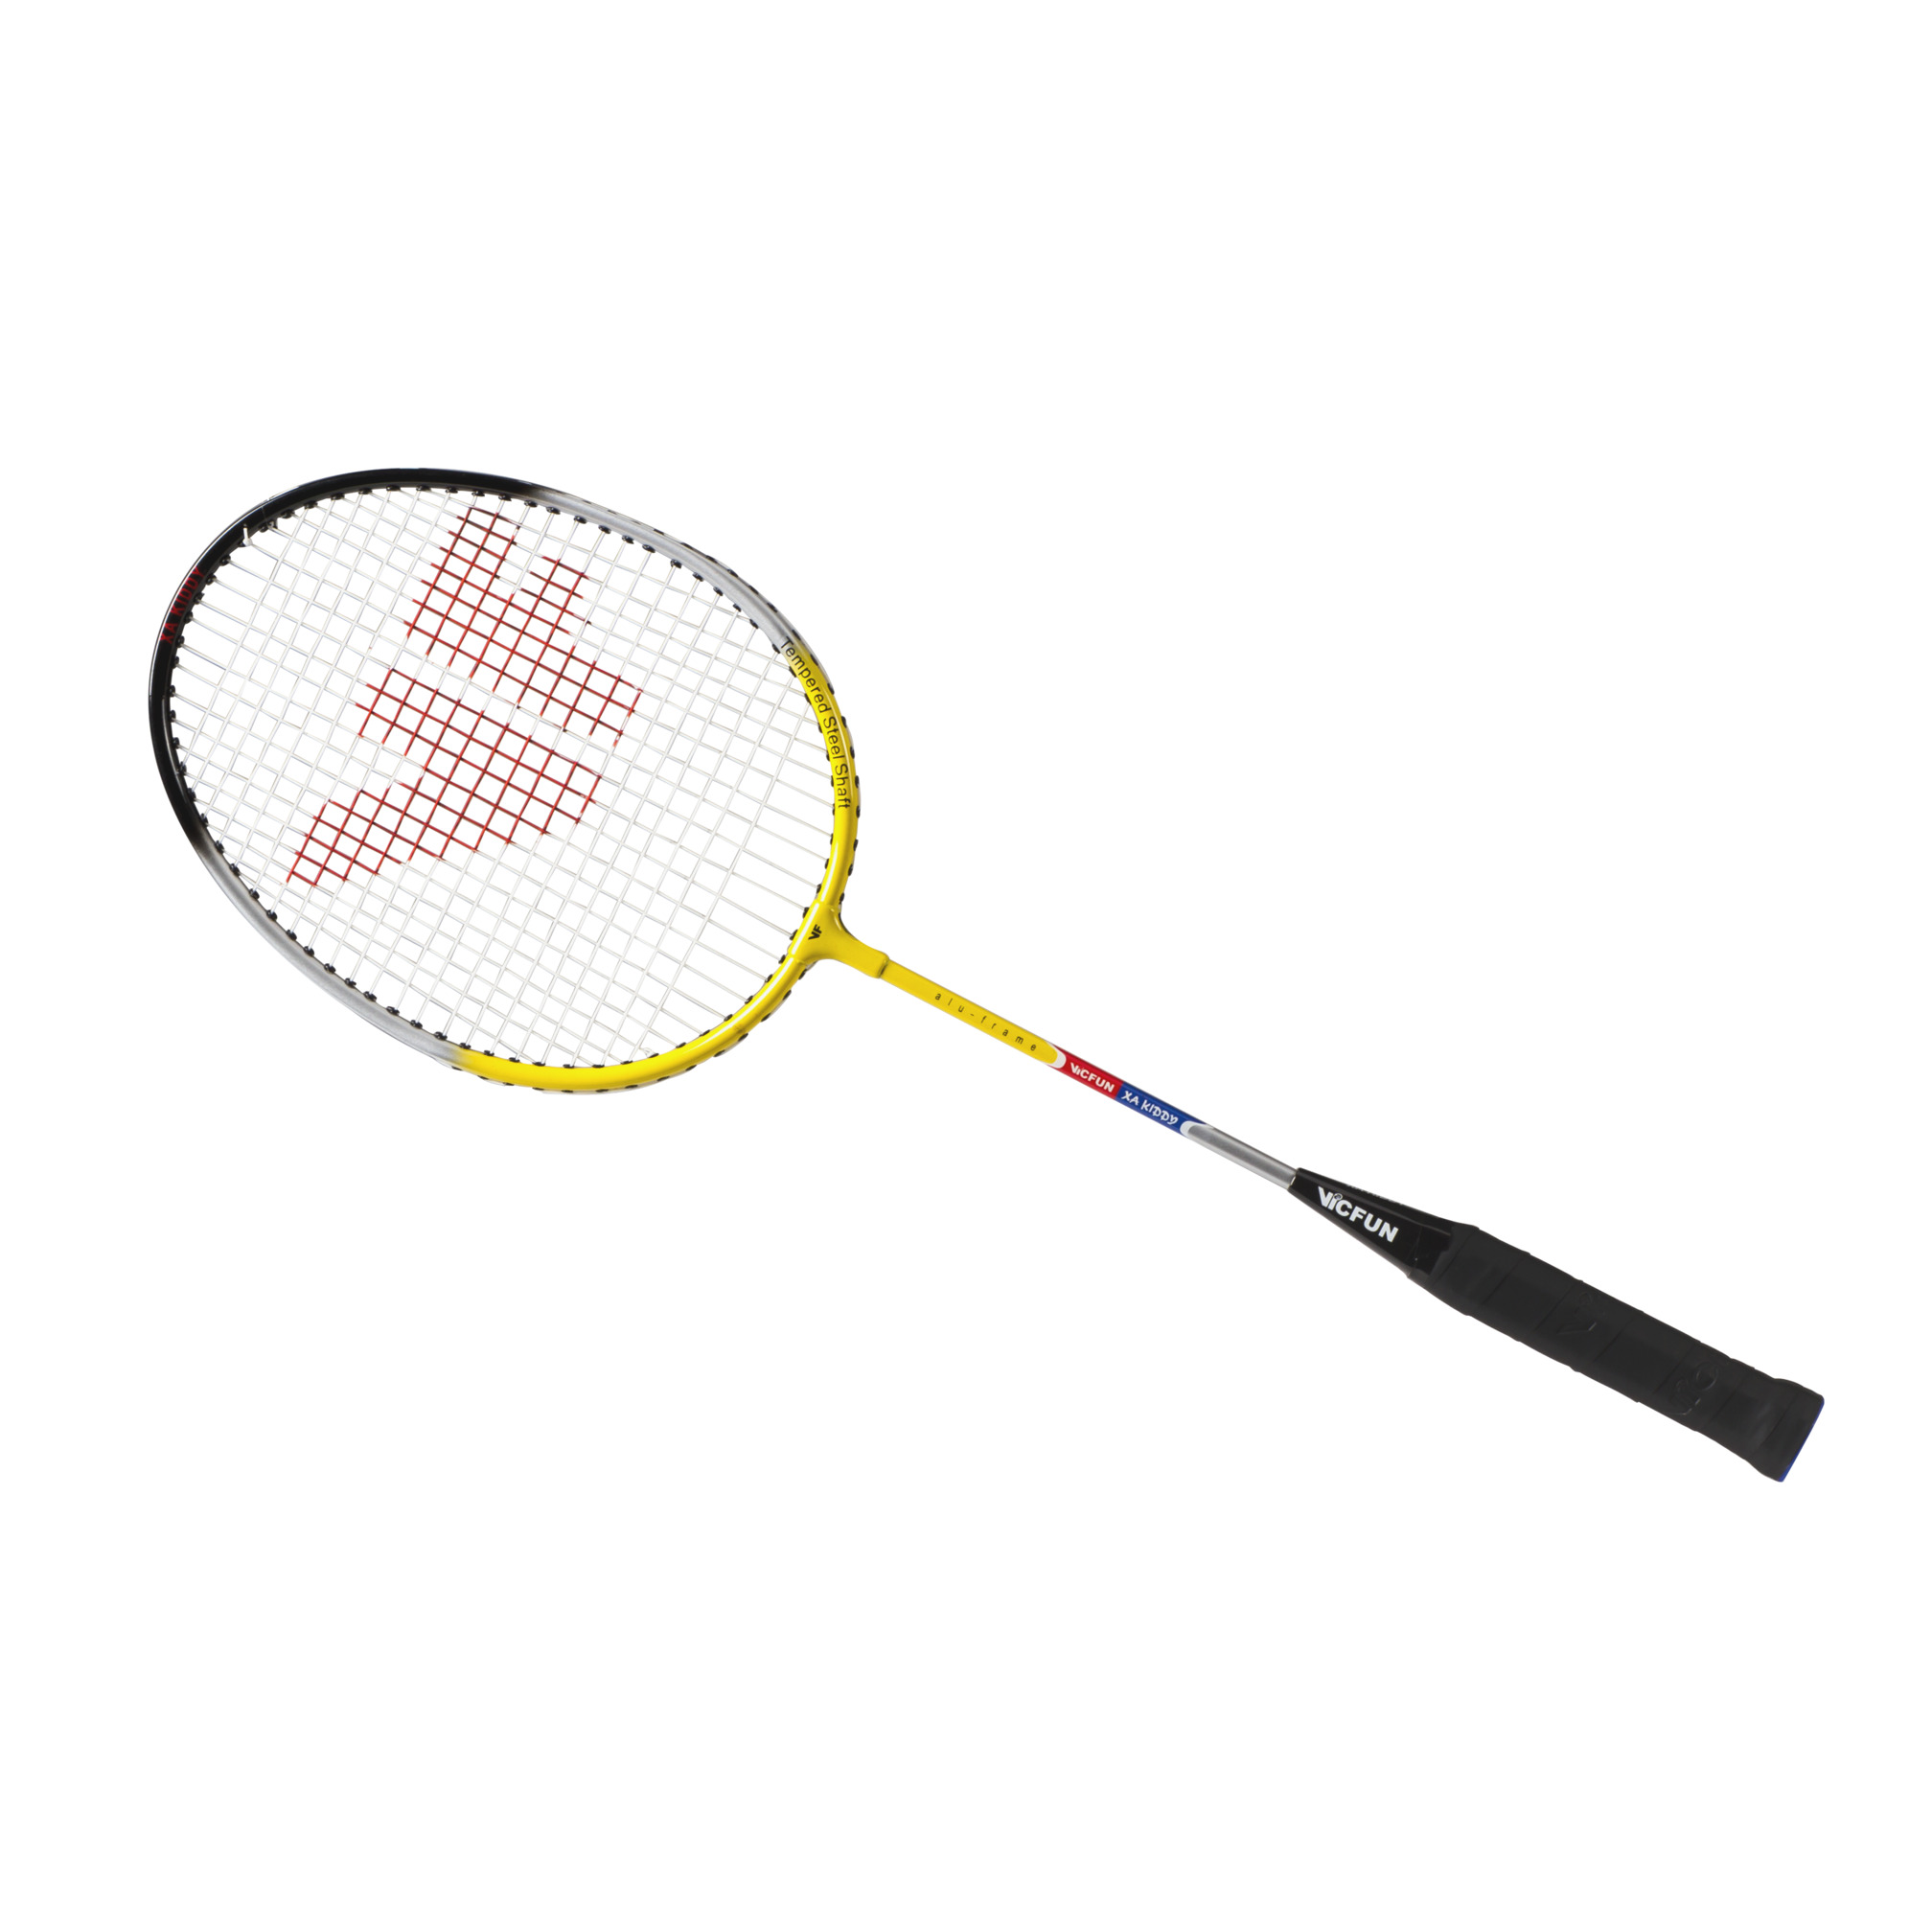 Badmintonschläger Vicfun XA Junior, Länge 61cm